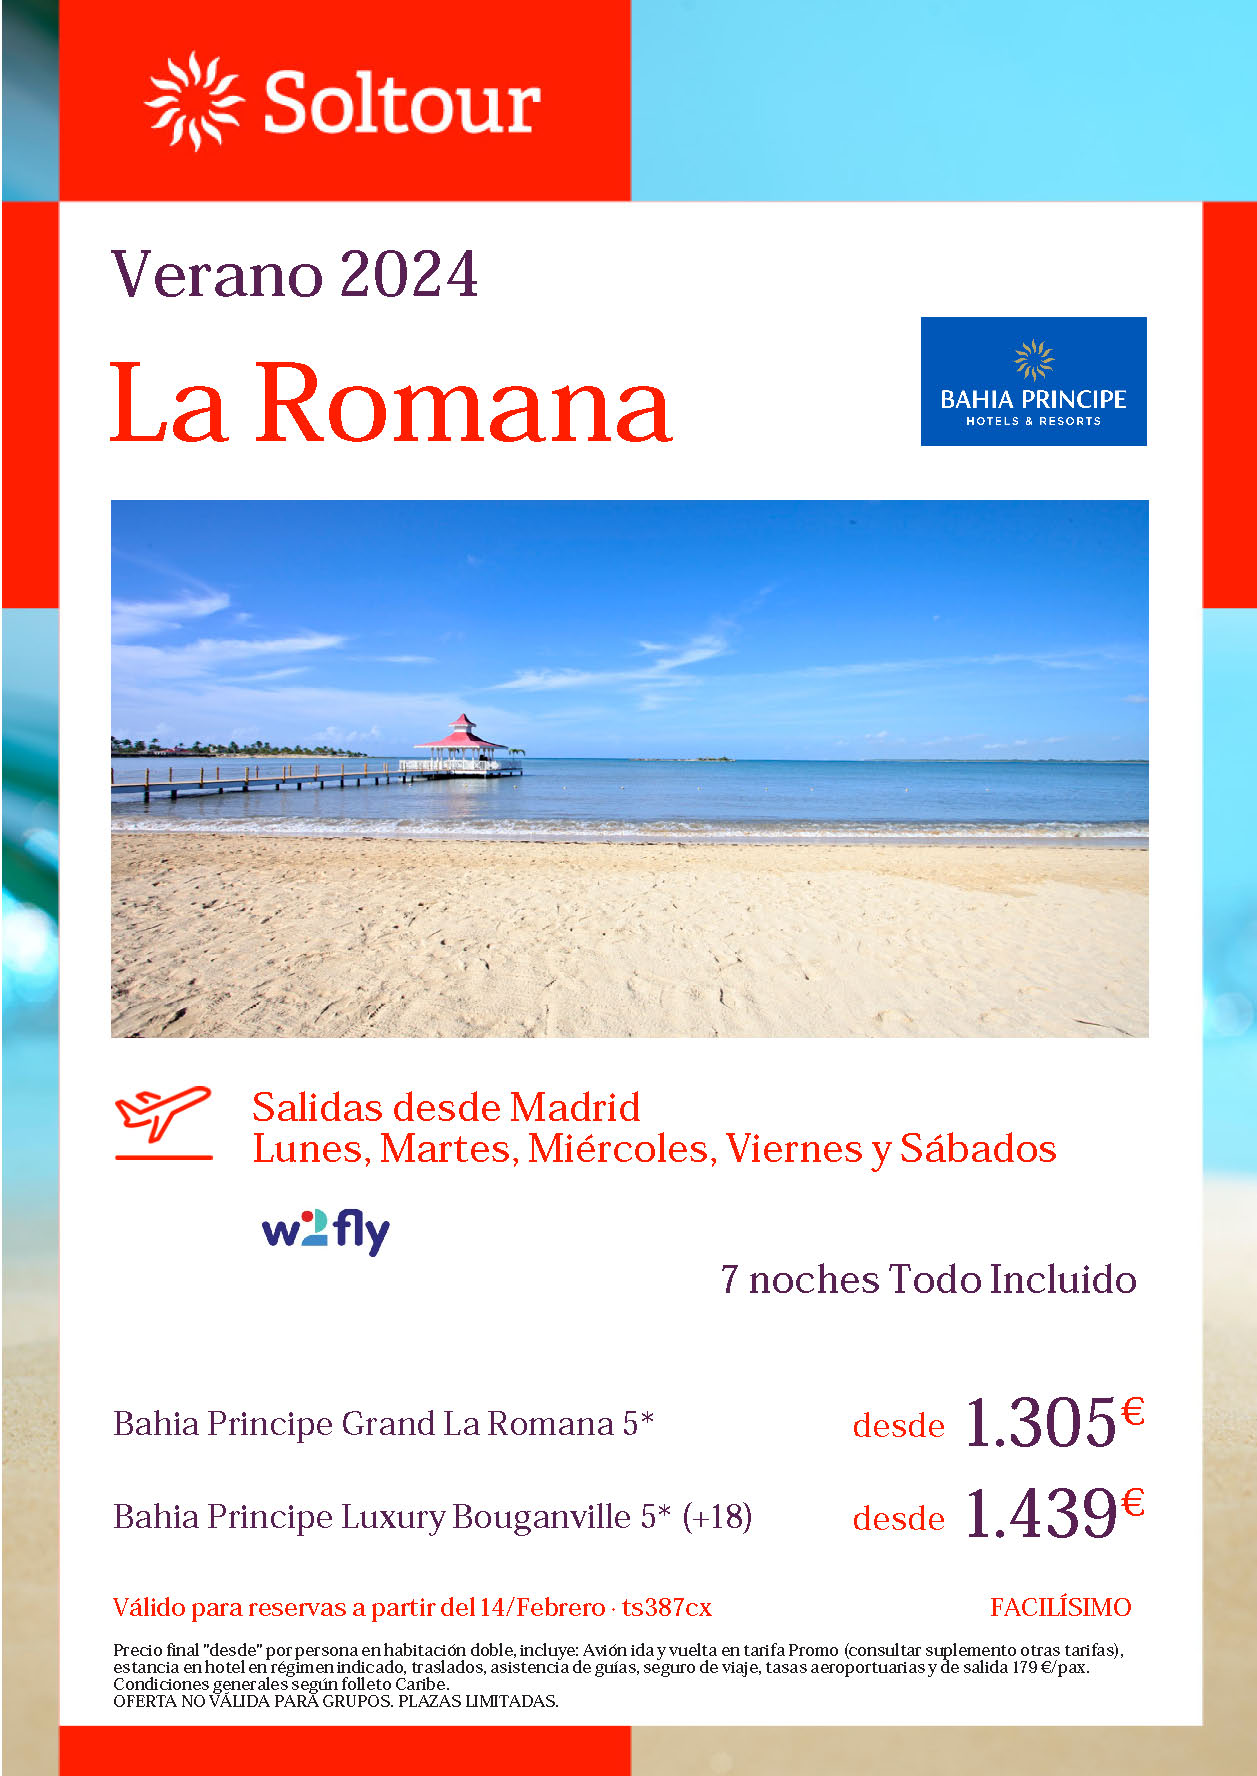 Oferta Soltour Estancia en La Romana Republica Dominicana 9 dias Hotel 5 estrellas Todo Incluido salidas Verano 2024 vuelo directo desde Madrid